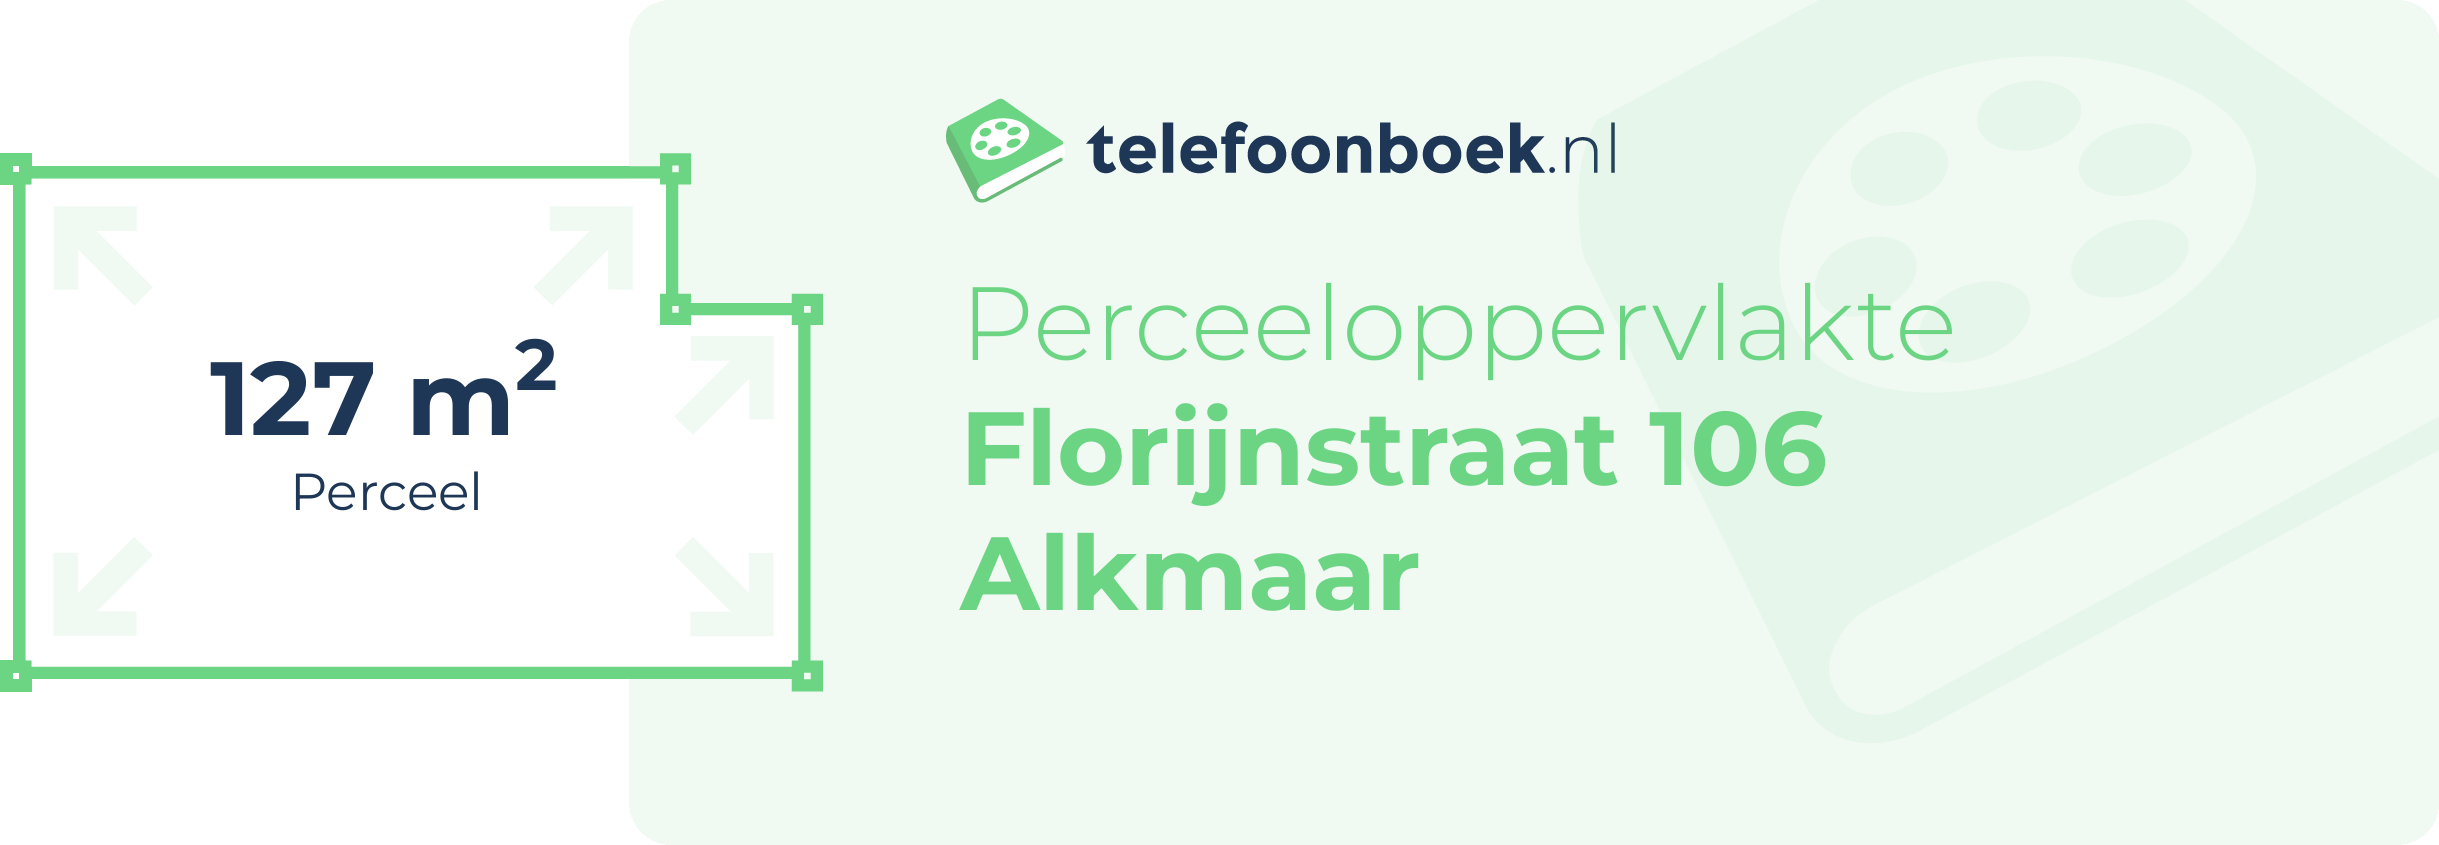 Perceeloppervlakte Florijnstraat 106 Alkmaar